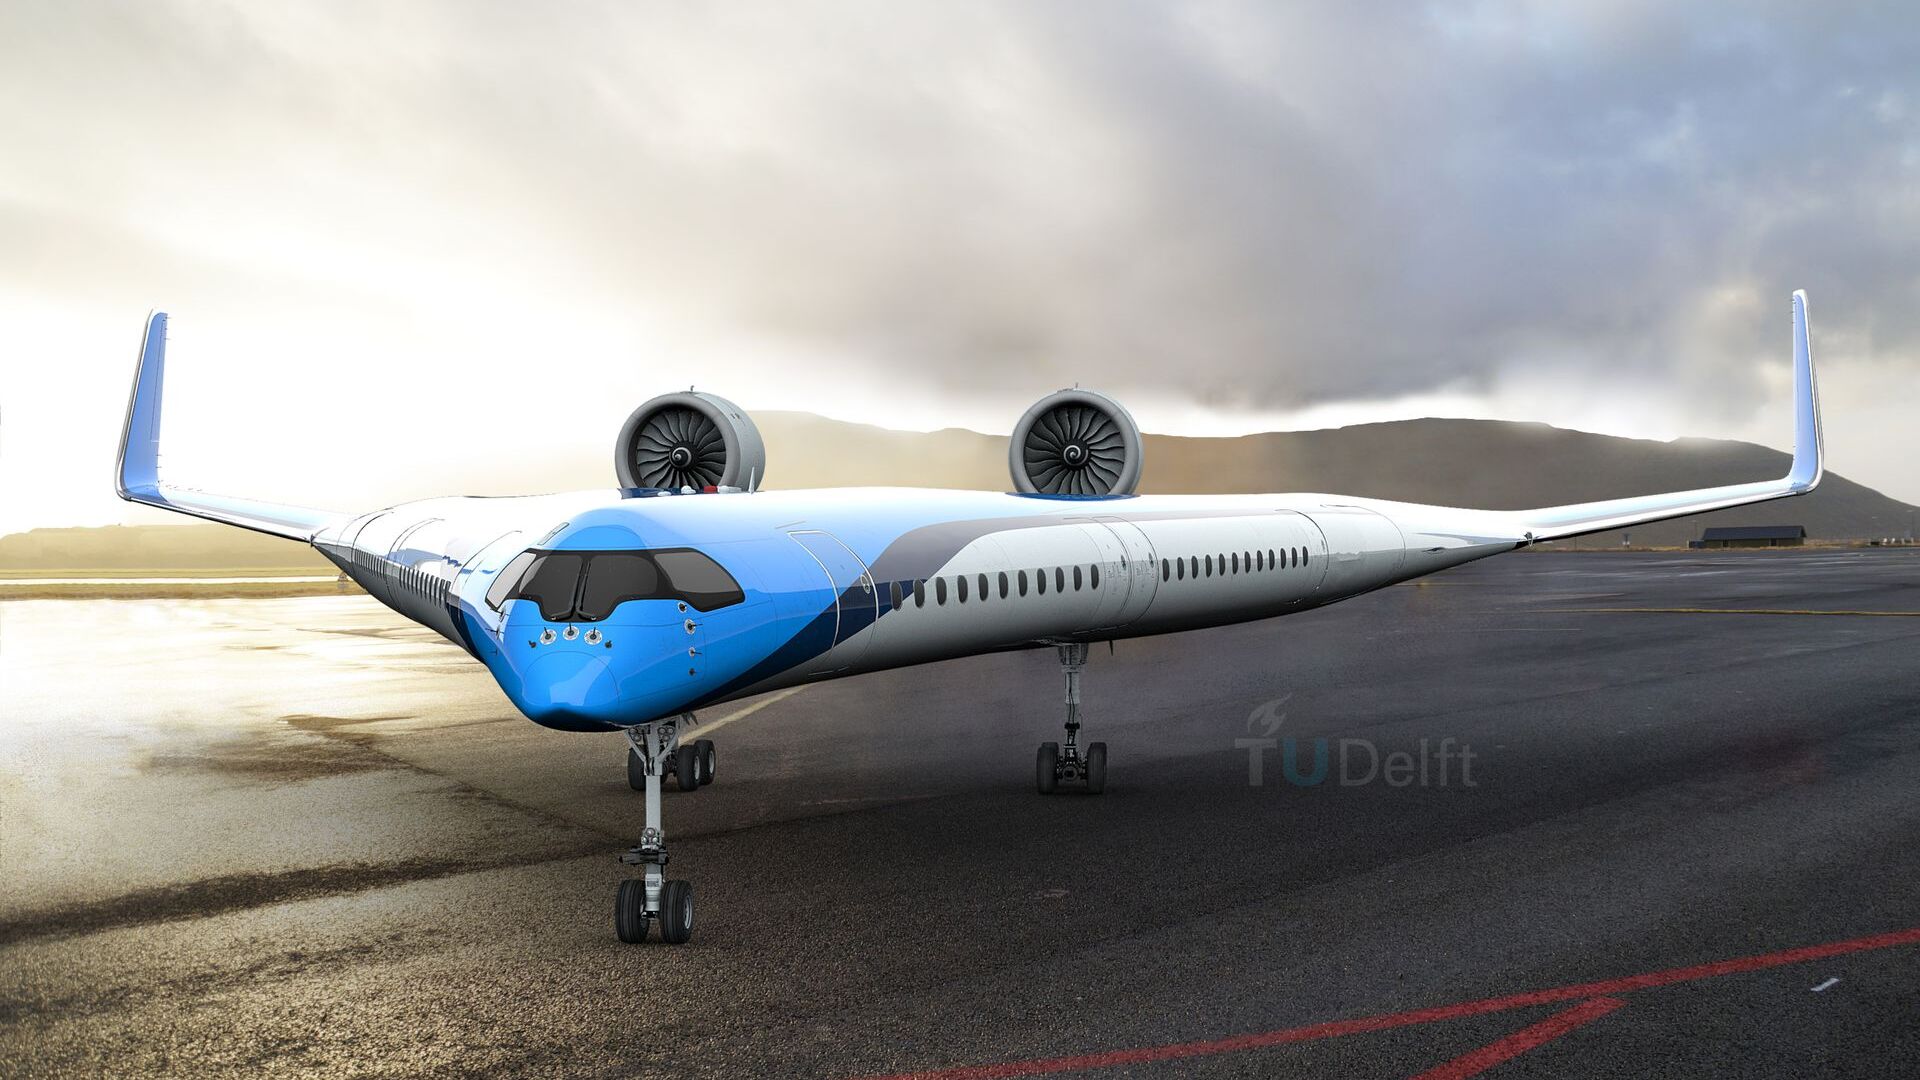 L’aereo sostenibile “Flying-V” di KLM e dell’Università TU Delft (Ilustrazione: Edwin Wallet/Studio OSO)